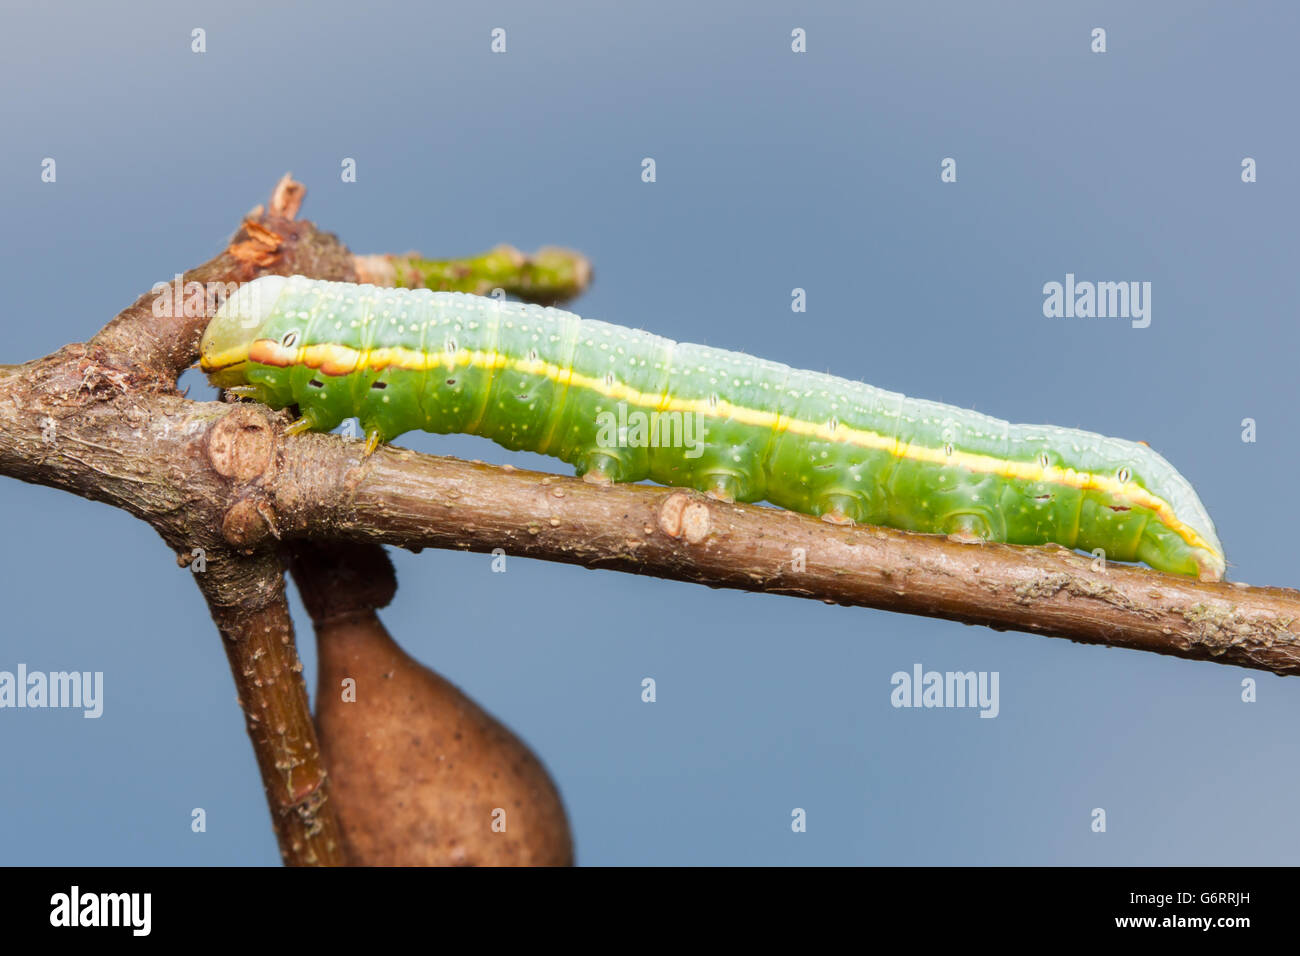 Ein Anglulose Prominente (Peridea Angulosa) Raupe (Larve) hockt auf einer Eiche Ast. Stockfoto